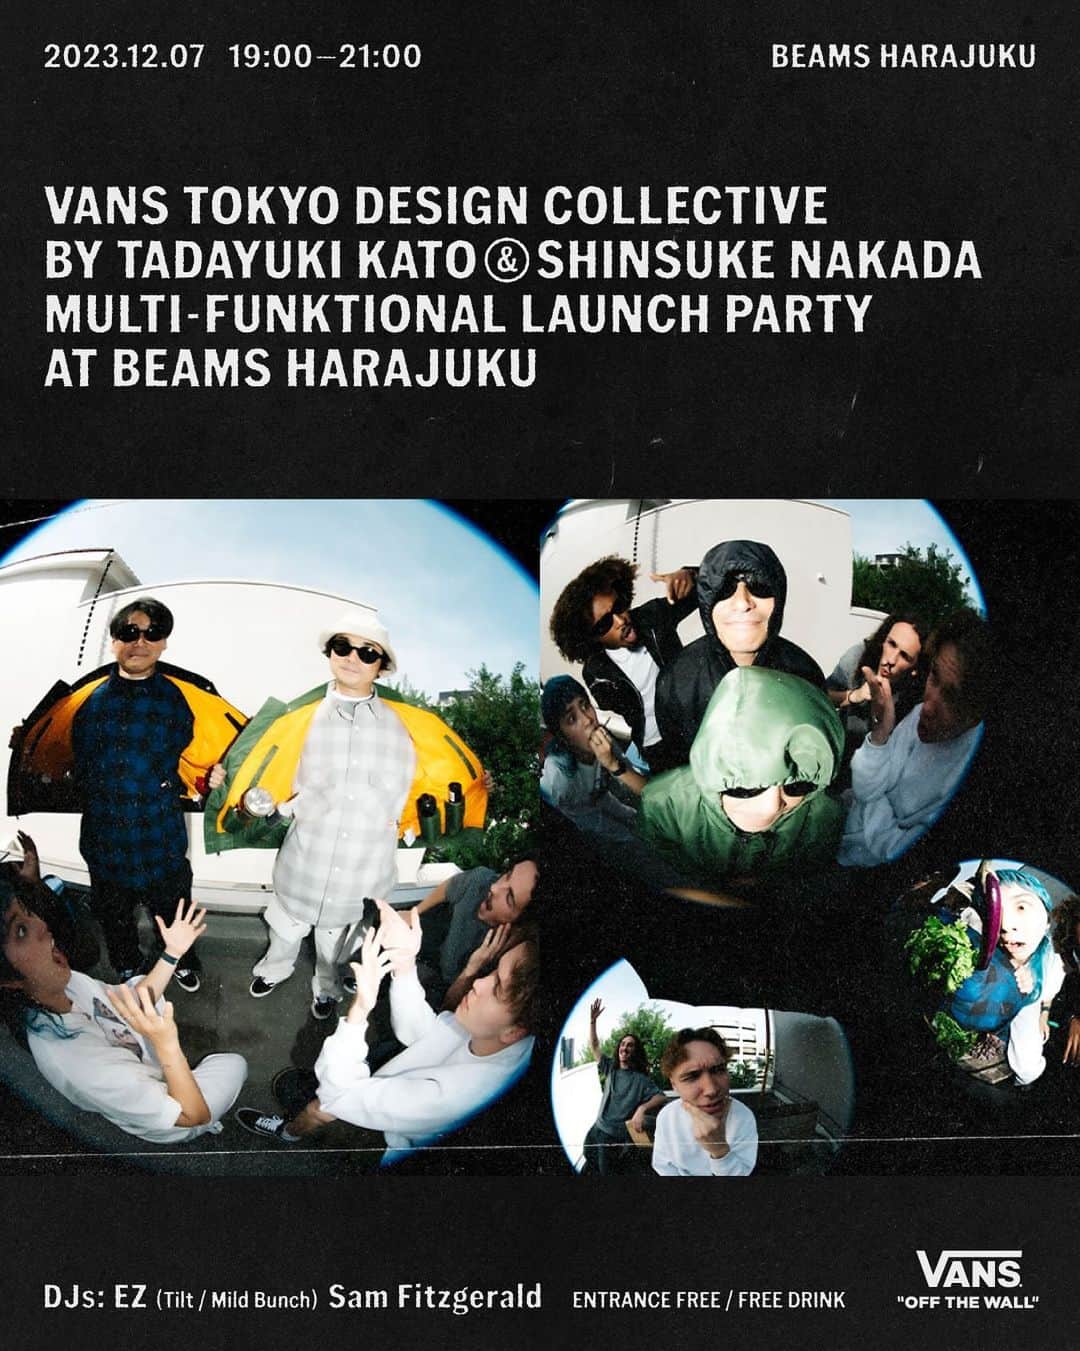 ヴァンズのインスタグラム：「VANS TOKYO DESIGN COLLECTIVE “MULTI-FUNKTIONAL” の発売を祝したローンチパーティーを2023年12月7日(木) 19:00からBEAMS HARAJUKUで開催。 本コレクションの先行販売に加え、来場者限定ノベルティのプレゼントやDJパフォーマンスを実施。どなたでも参加可能、スペシャルな夜をお見逃しなく。  VANS TOKYO DESIGN COLLECTIVE BY TADAYUKI KATO & SHINSUKE NAKADA “MULTI-FUNKTIONAL” LAUNCH PARTY AT BEAMS HARAJUKU  会場：BEAMS HARAJUKU 〒150-0001 東京都渋谷区神宮前3-24-7  日時：2023年12月7日 (木) 19:00～21:00 入場無料 / フリードリンク  DJ:  EZ (Tilt/Mild Bunch) Sam Fitzgerald  ※先行販売・ノベルティについて、数に限りがございます。なくなり次第終了となります。 ※先行販売については規約を設ける場合がございます。  @katoyasai  @nakadashinsuke  @ezmd  @samfitzgerald_ @beams_harajuku」